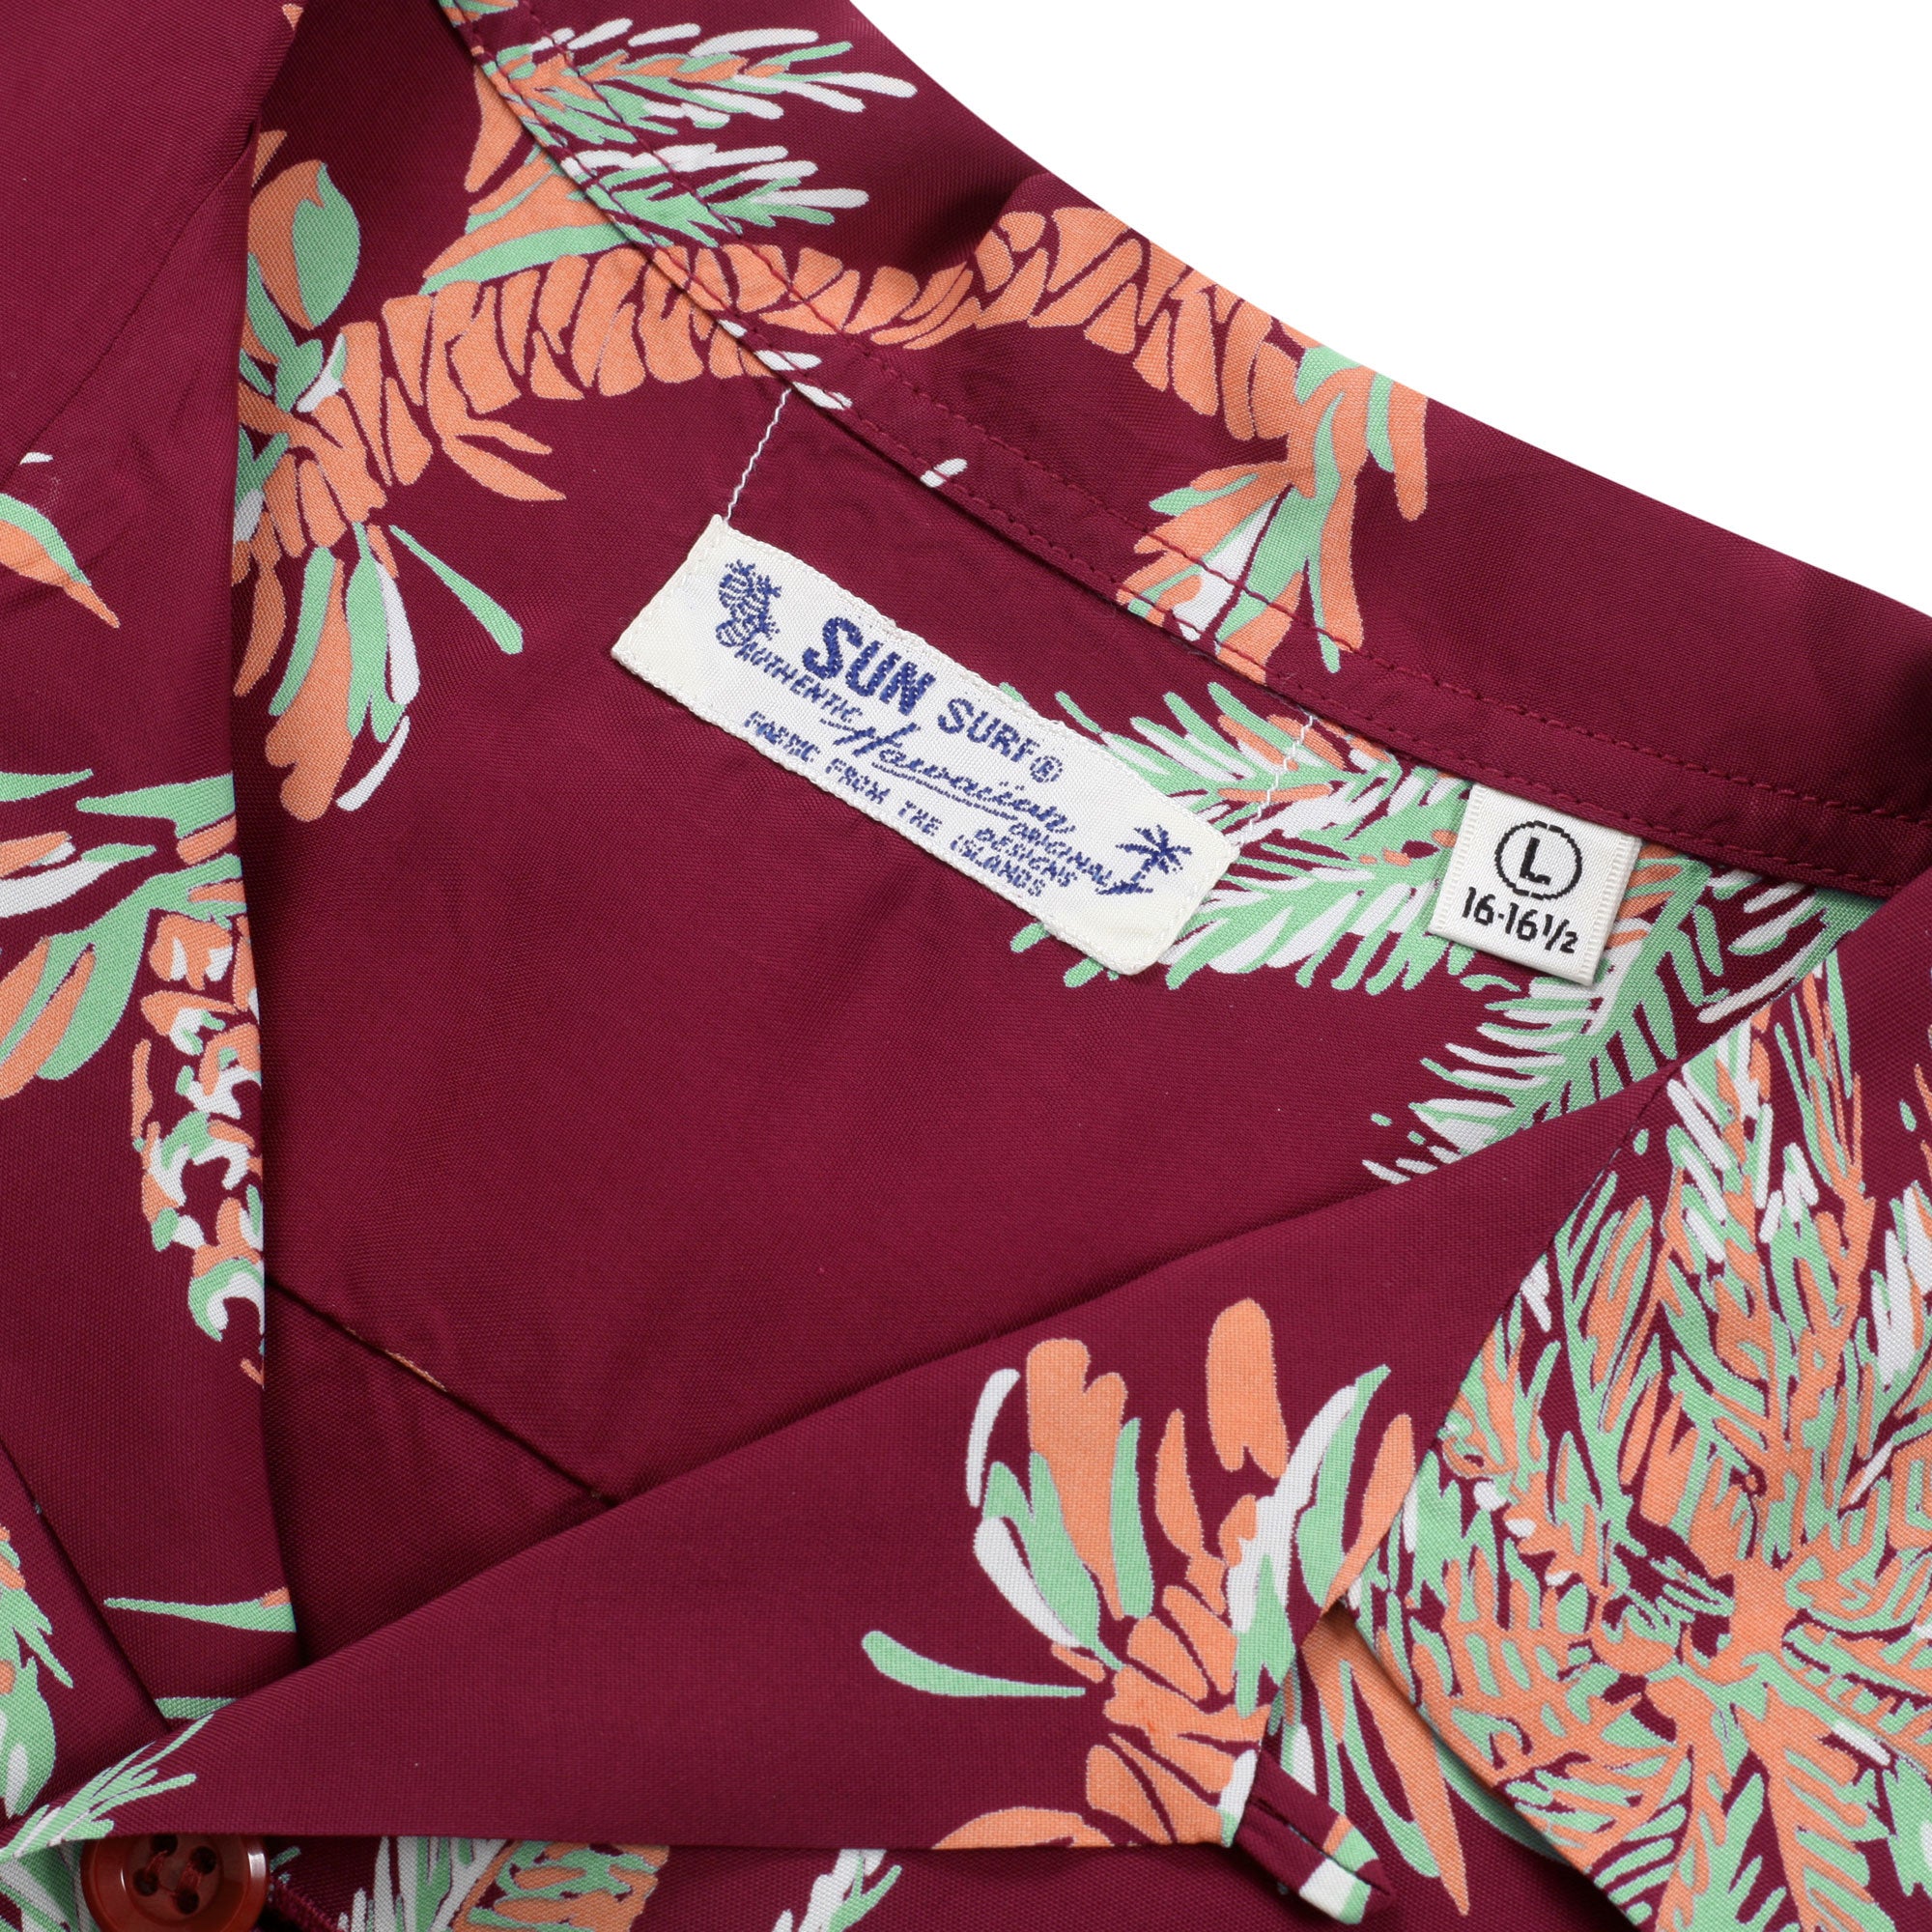 Mets Palm Tree Hawaiian Shirt - Lelemoon